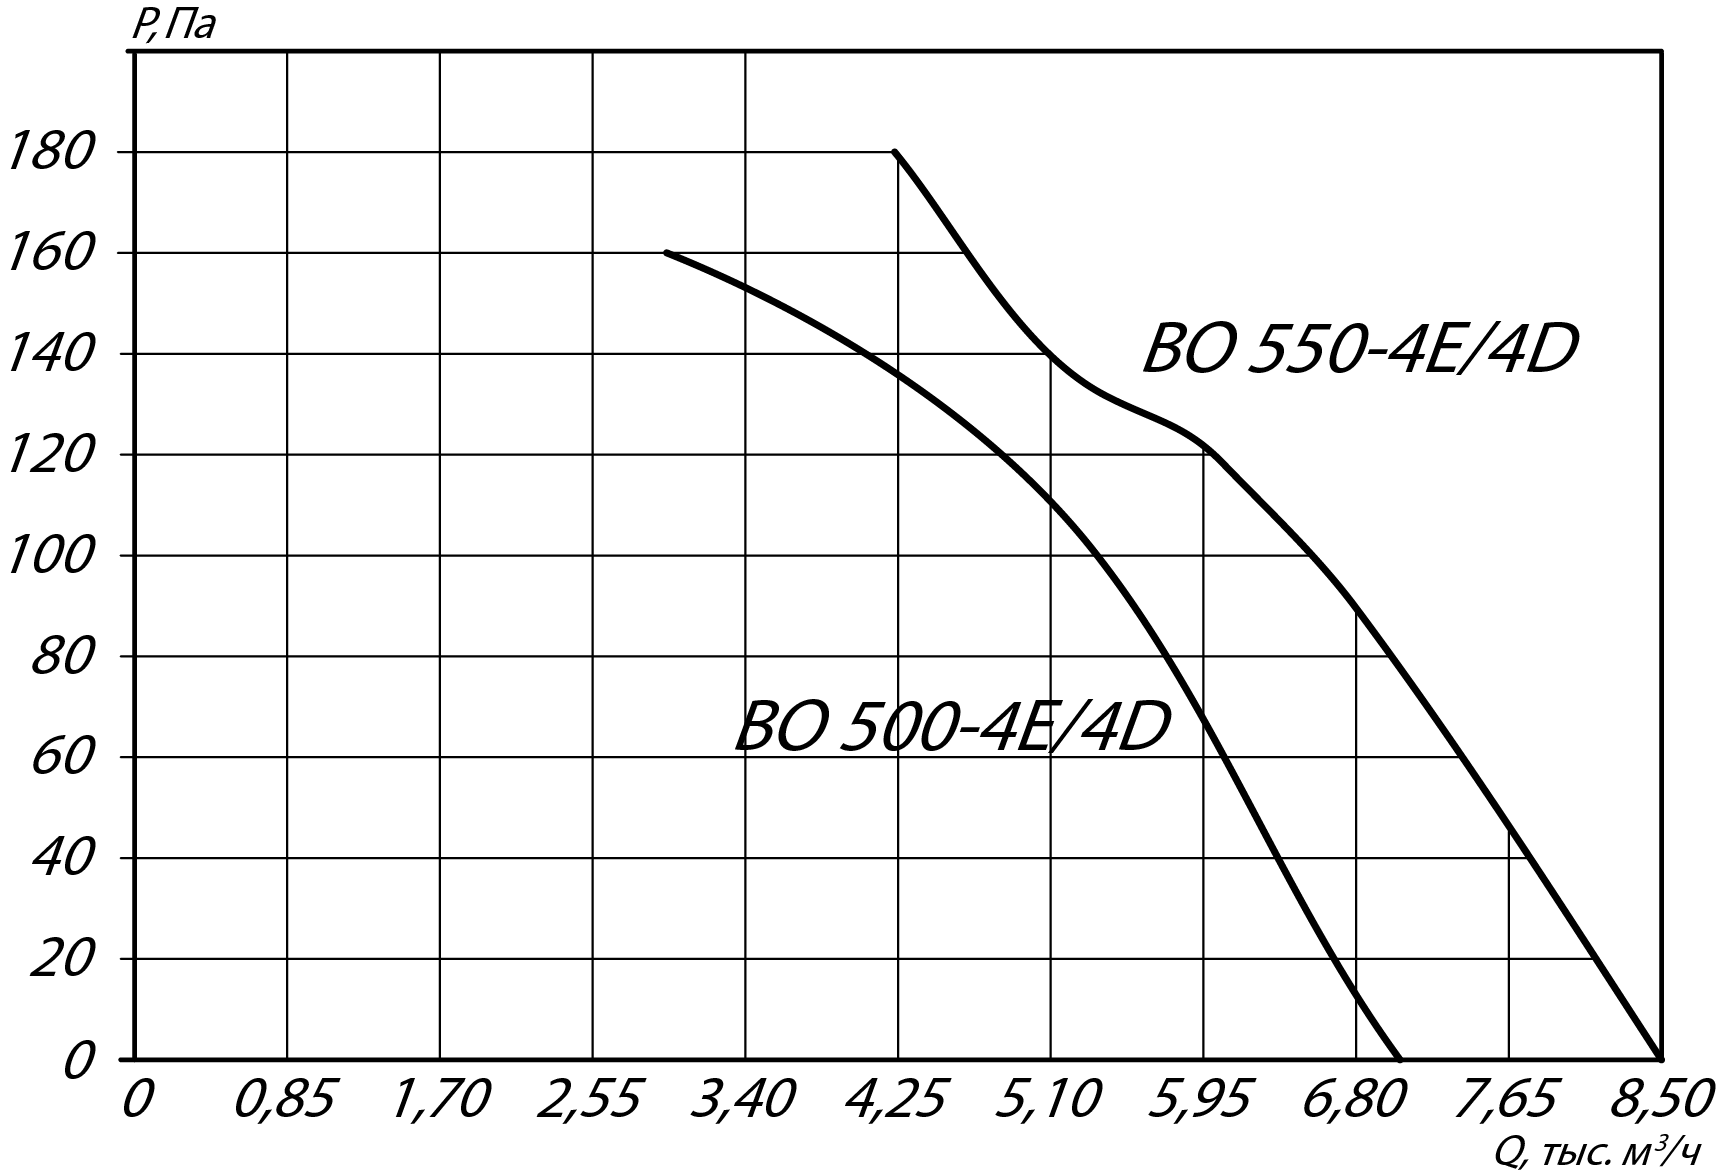 Аэродинамические характеристики осевого вентилятора YWF 550